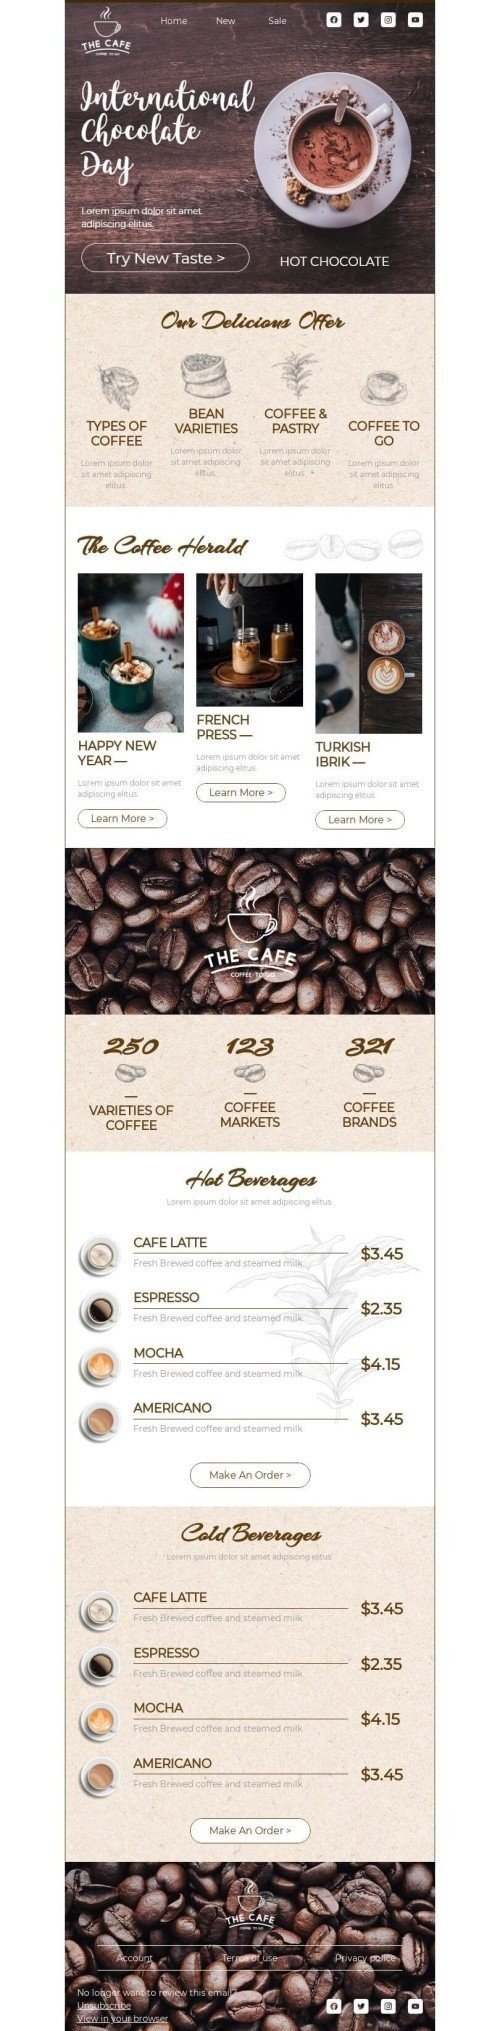 Modelo de E-mail de «Experimente um novo sabor» de Dia Internacional do Chocolate para a indústria de Bebidas Visualização de desktop